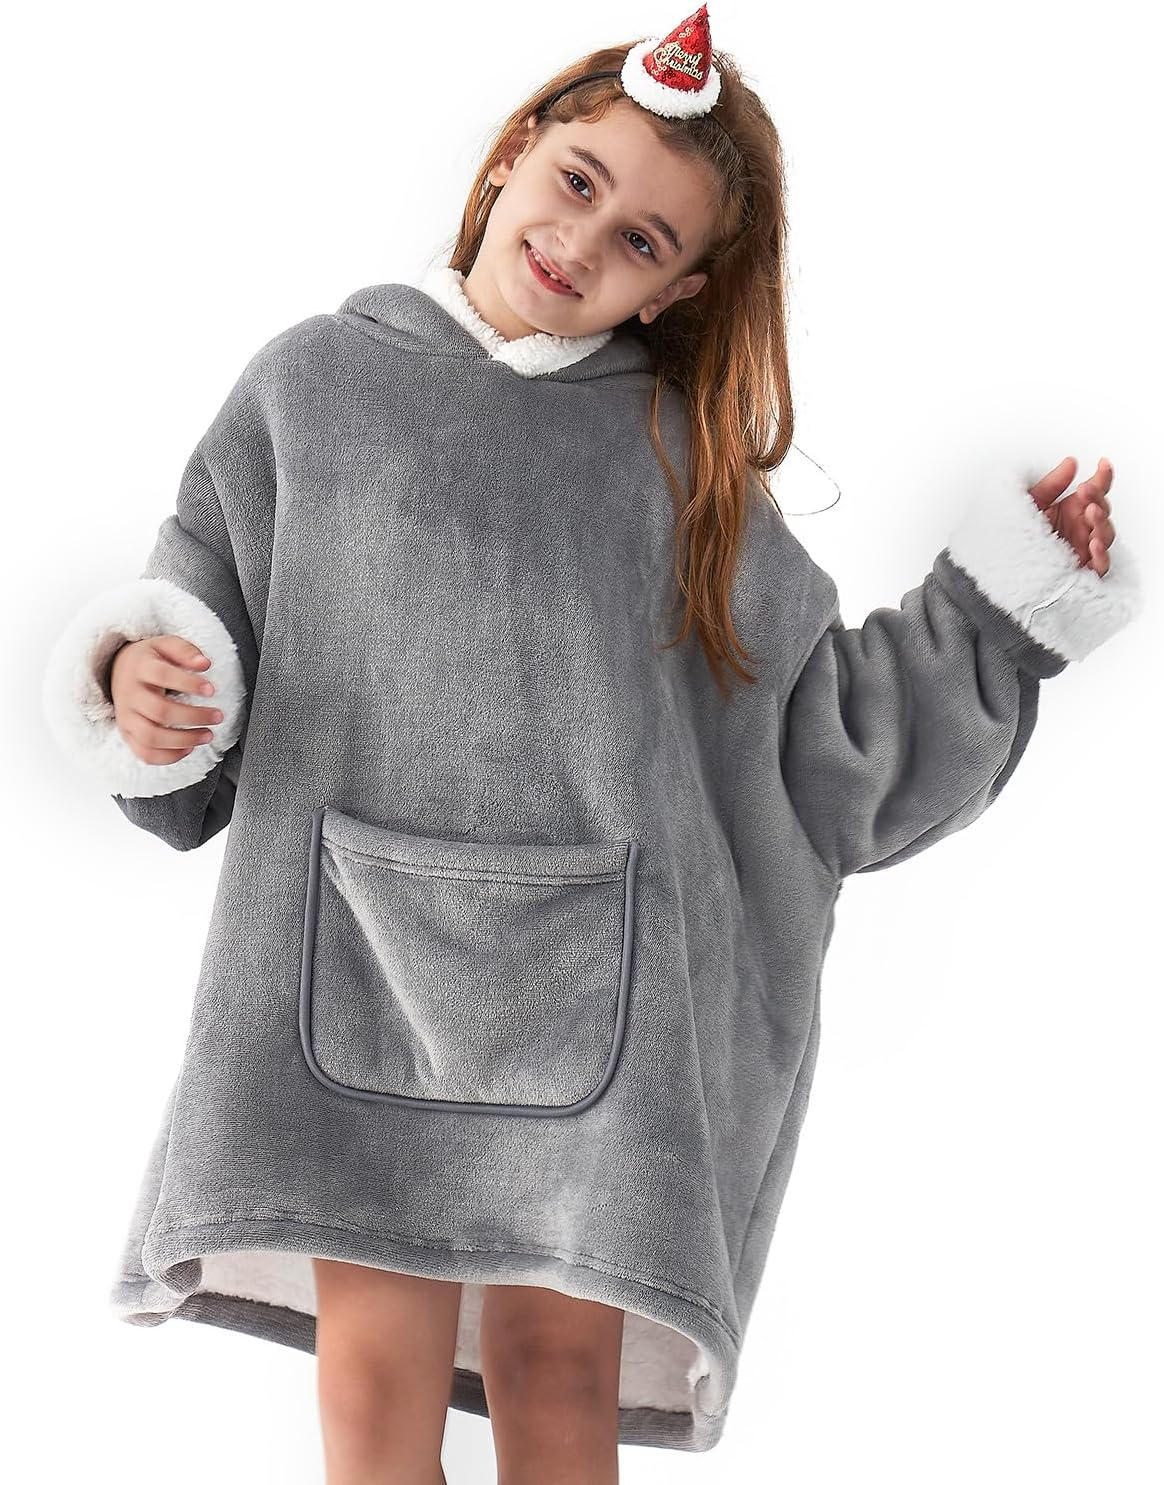 Wearable Blanket Hoodie for Kids, Hoodie Blanket with Pockets and Sleeves Sweatshirt for Teens as a Gift – Grey Kids